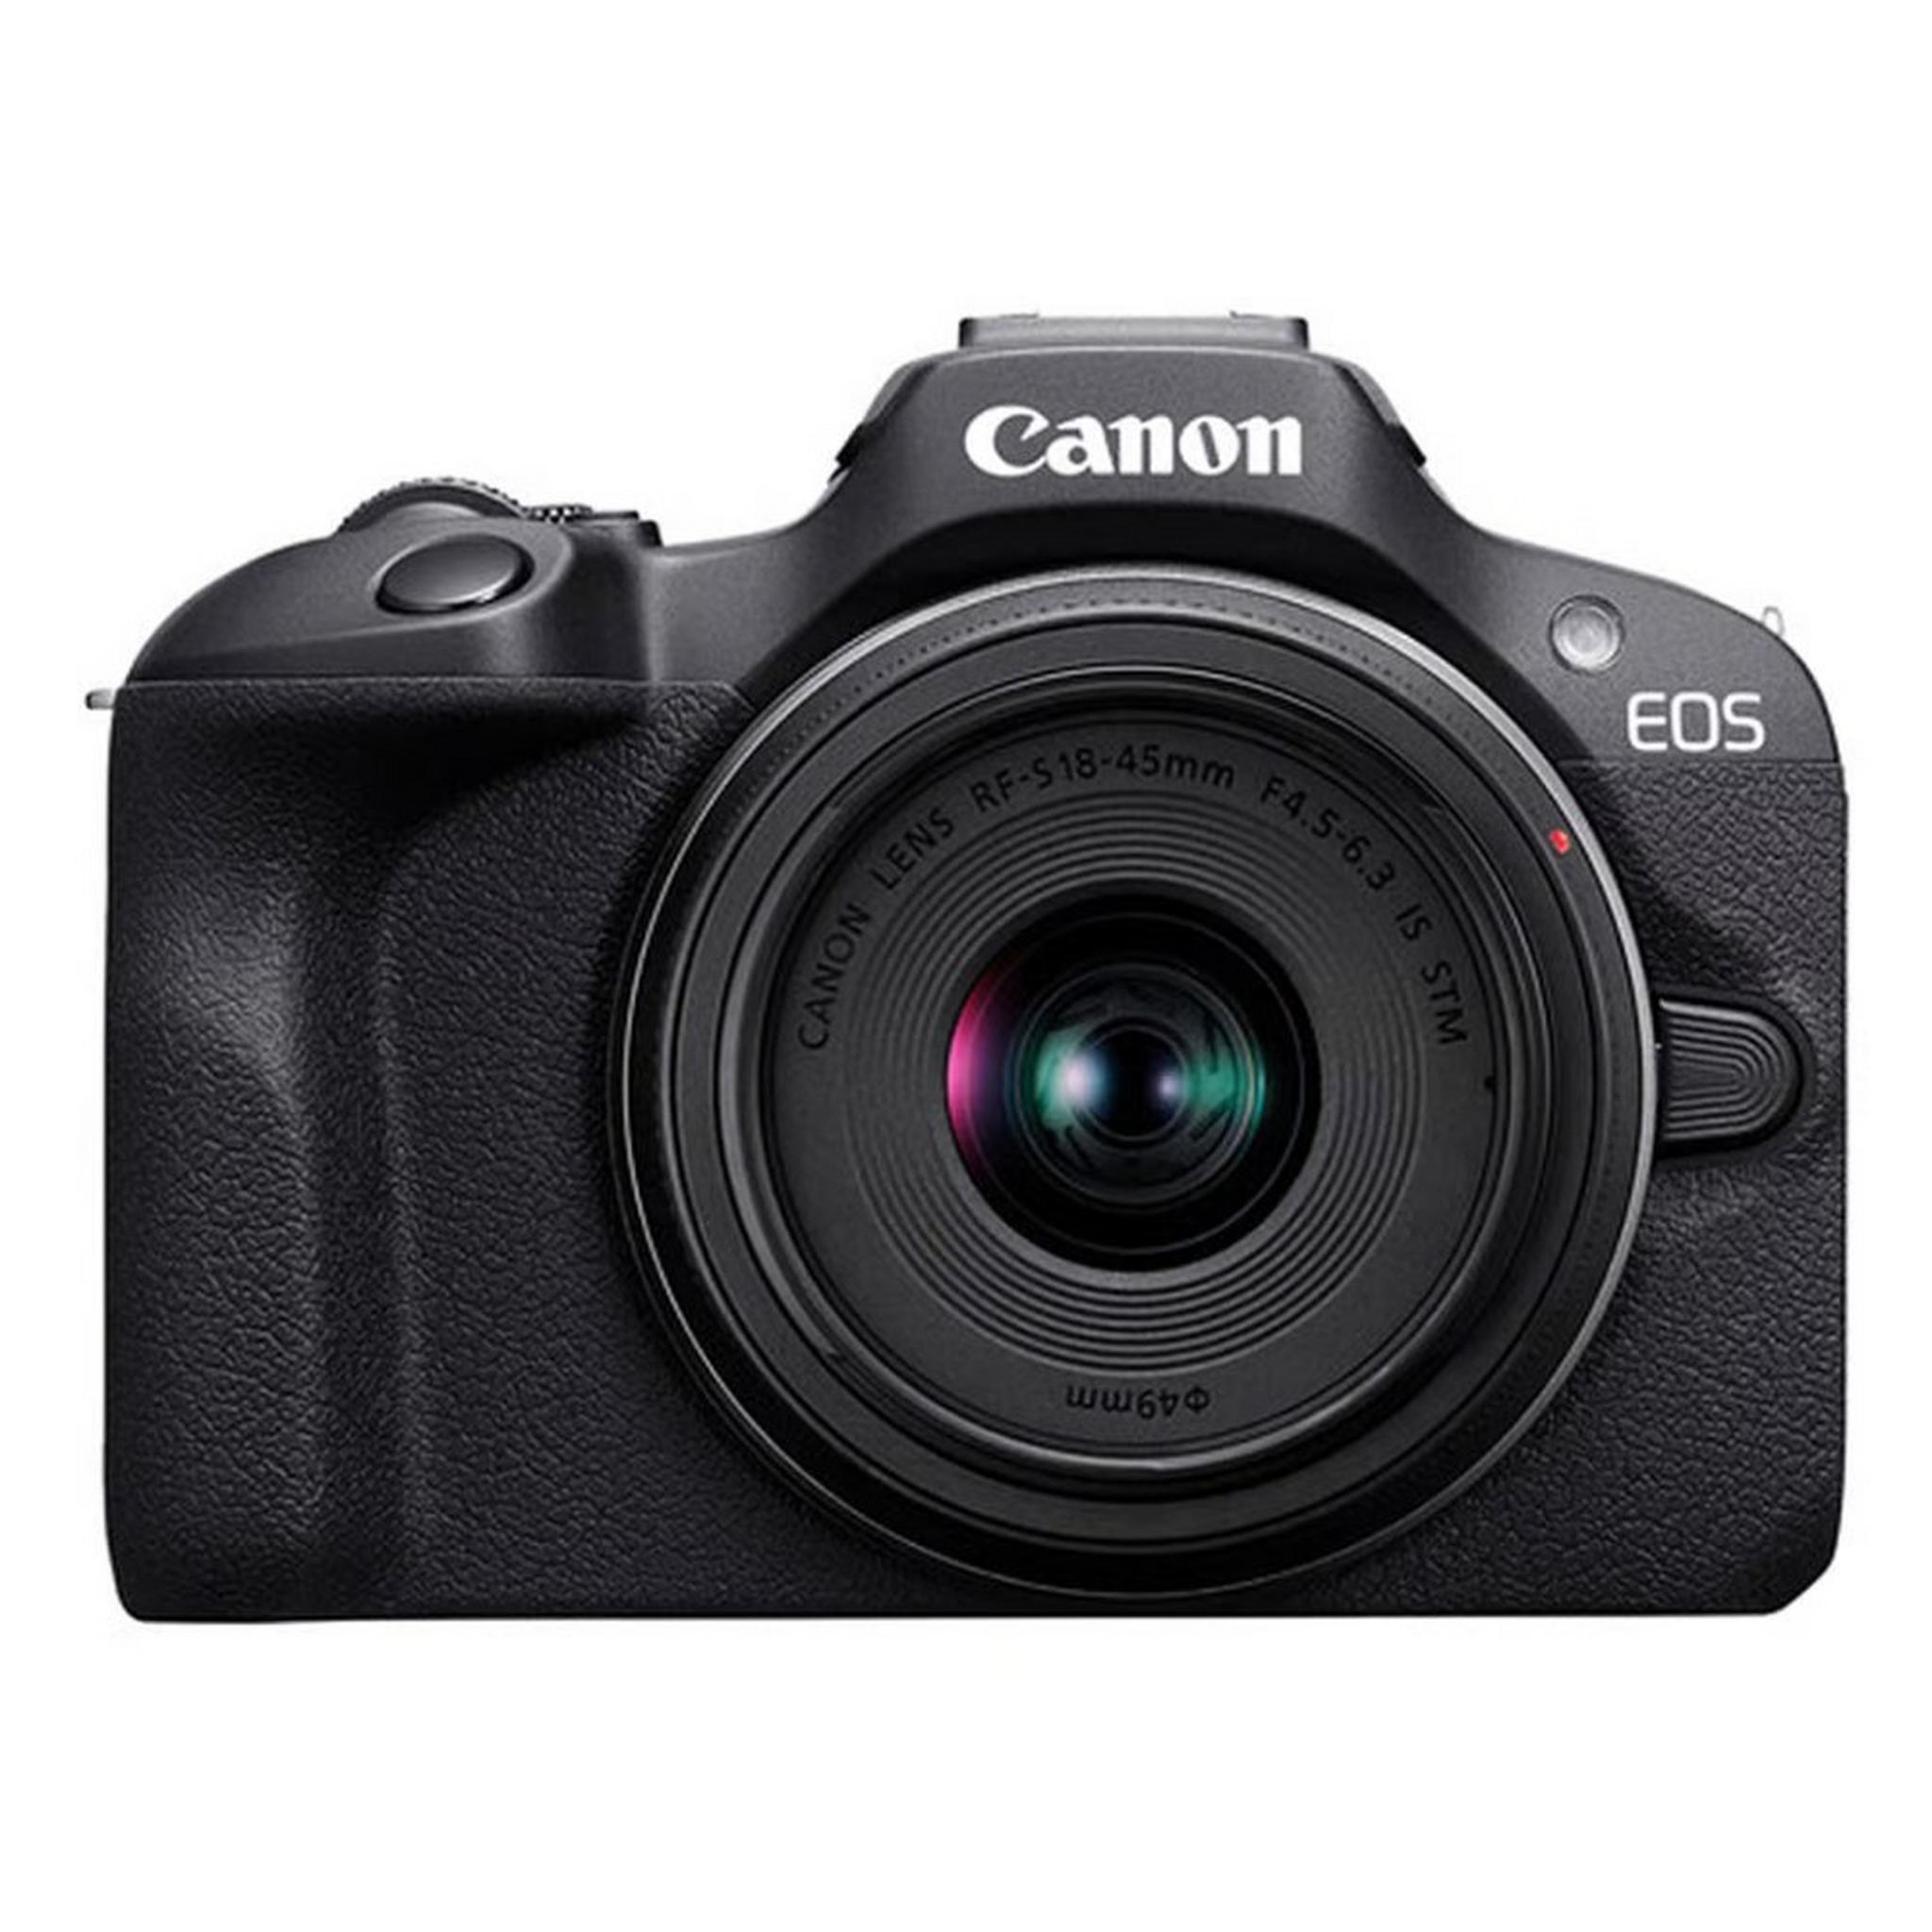 كاميرا اي او اس ار 100 بدون مرآه + عدسة 18-45 ملم RF-S من كانون (6052C013AA)